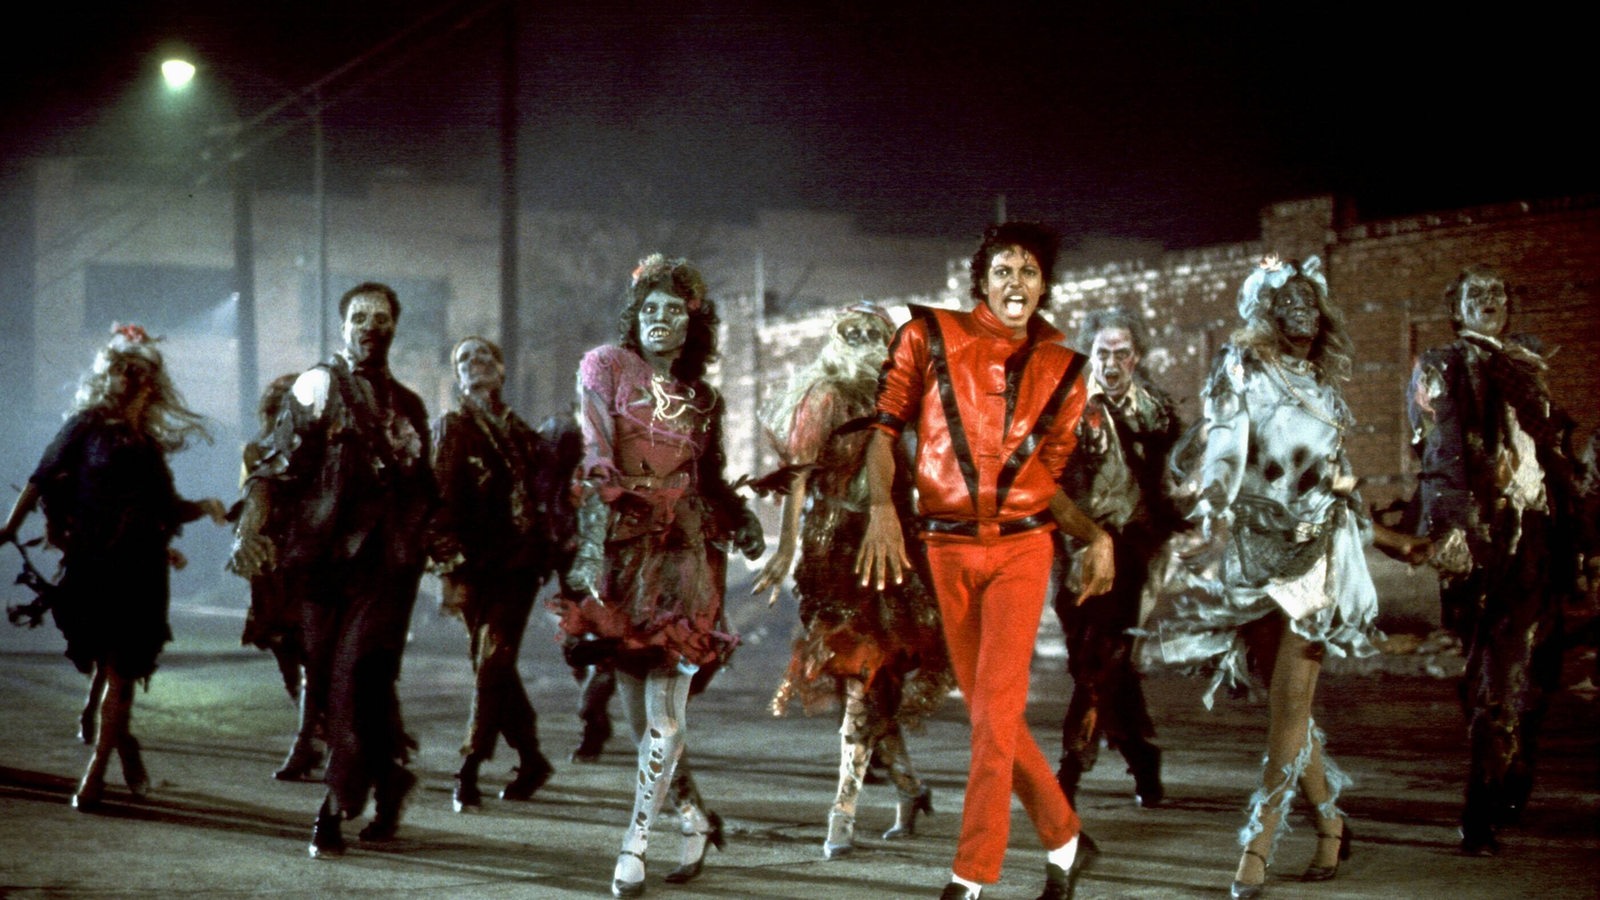 Bild aus dem Musikvideo zu Thriller von Michael Jackson